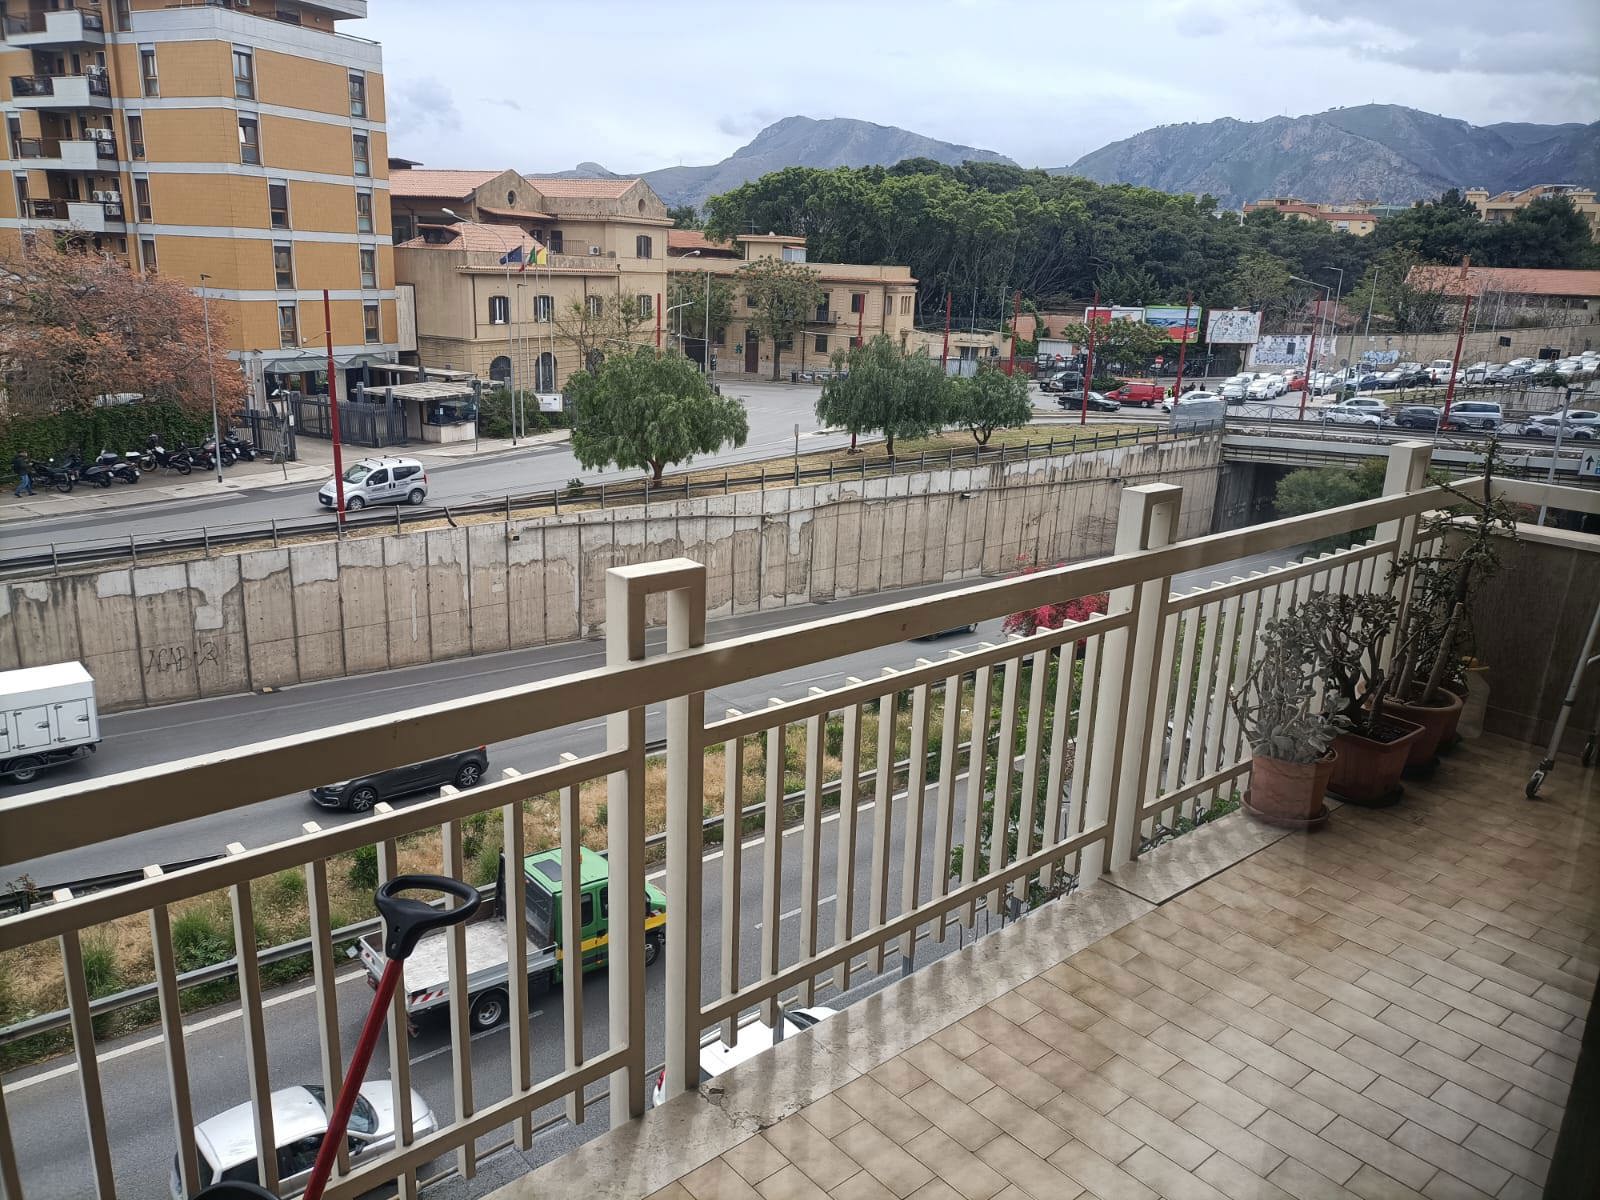 Quadrilocale in vendita a Palermo